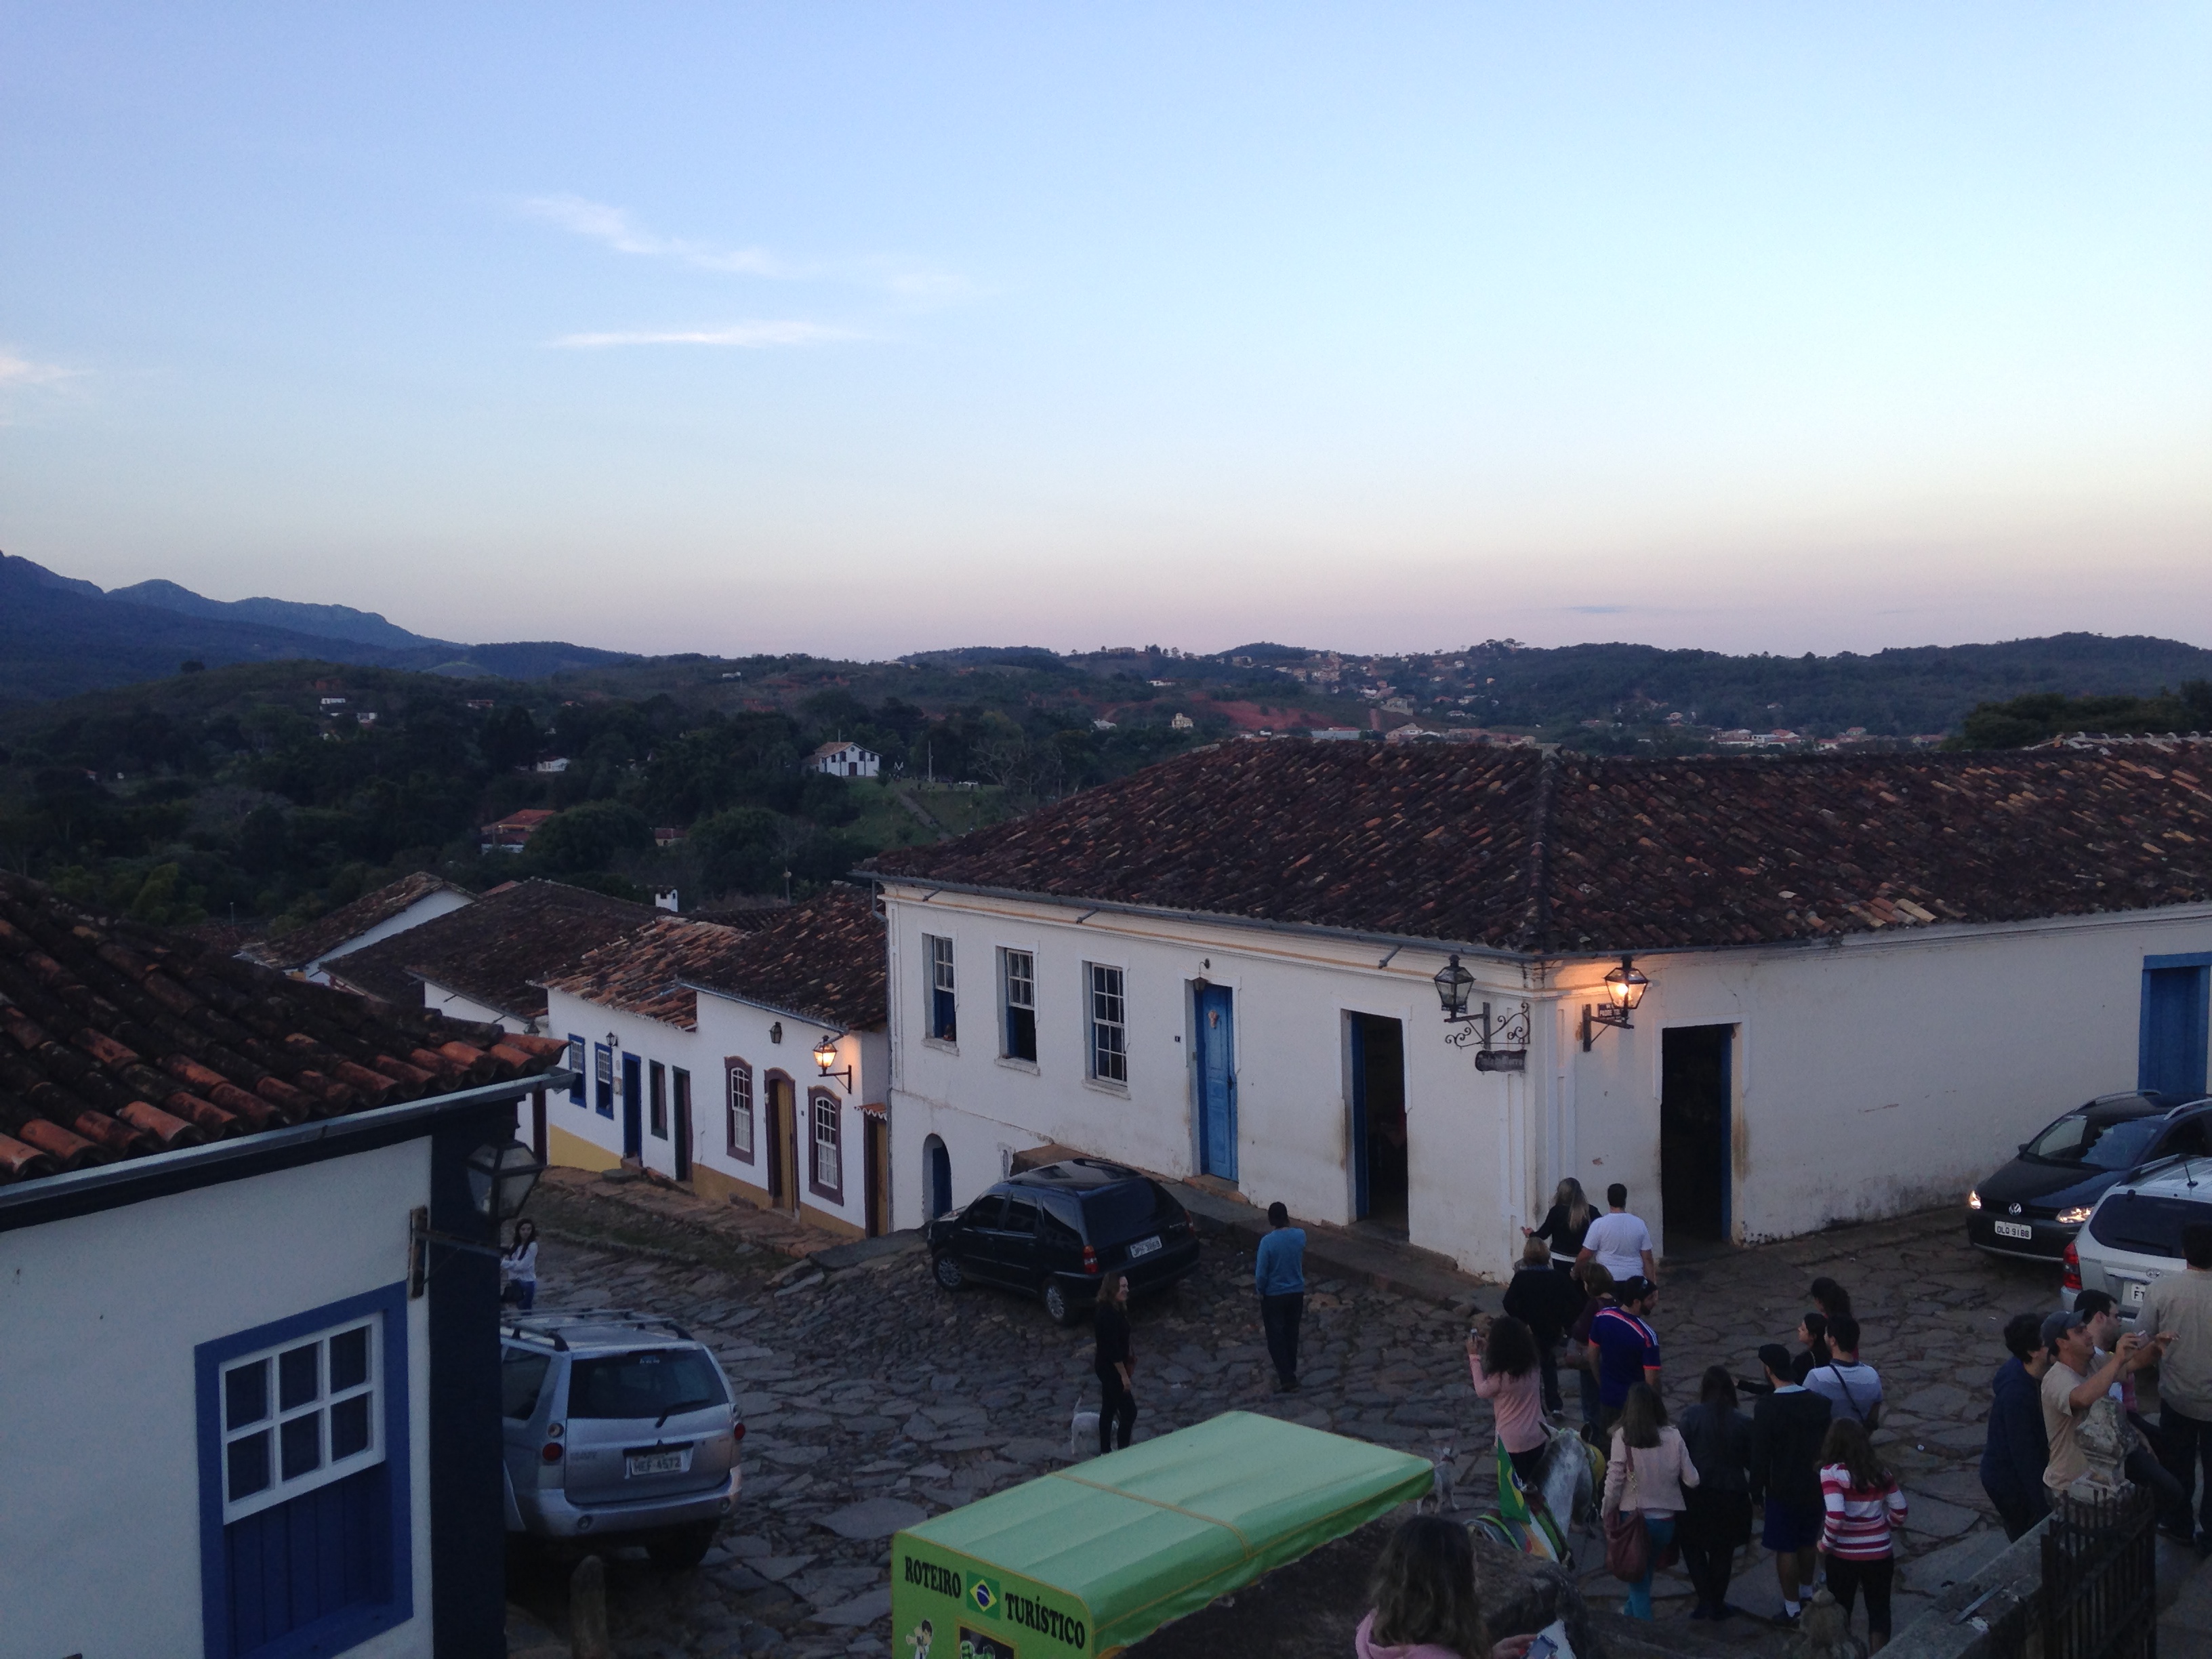 20140620 200241605 ios - Tiradentes (Brasil) y un paseo por la ruta del oro en Minas Gerais